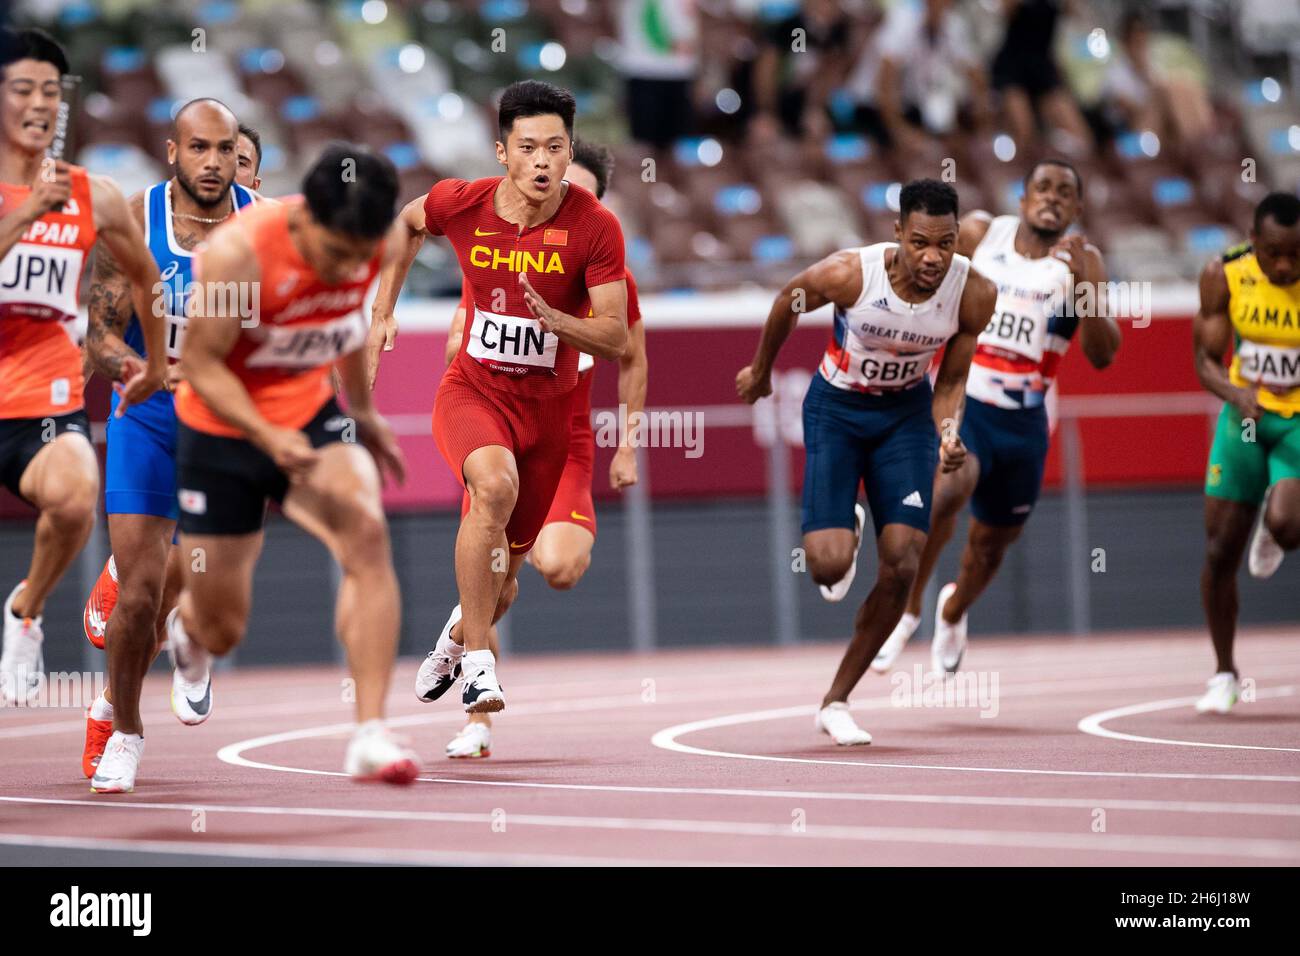 Les sprinters de la finale masculine de 4x100m dans les Jeux Olympiques de Tokyo 2020 effectuent un changement sur la courbe. Banque D'Images